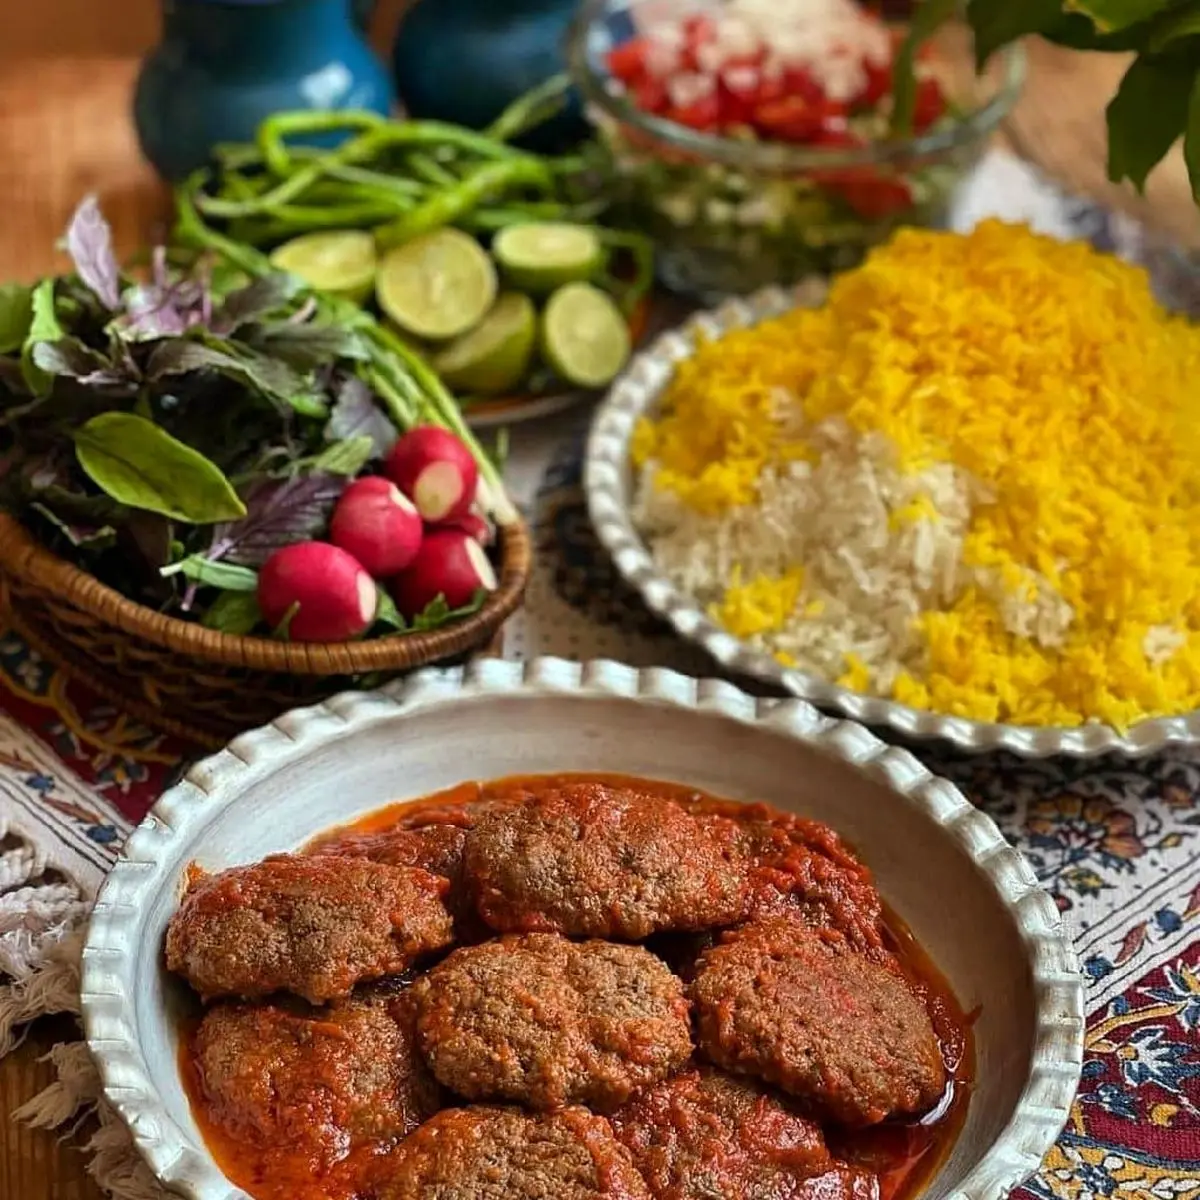 سورملی کباب | واقعا غذاهای آذری فوق العاده س!